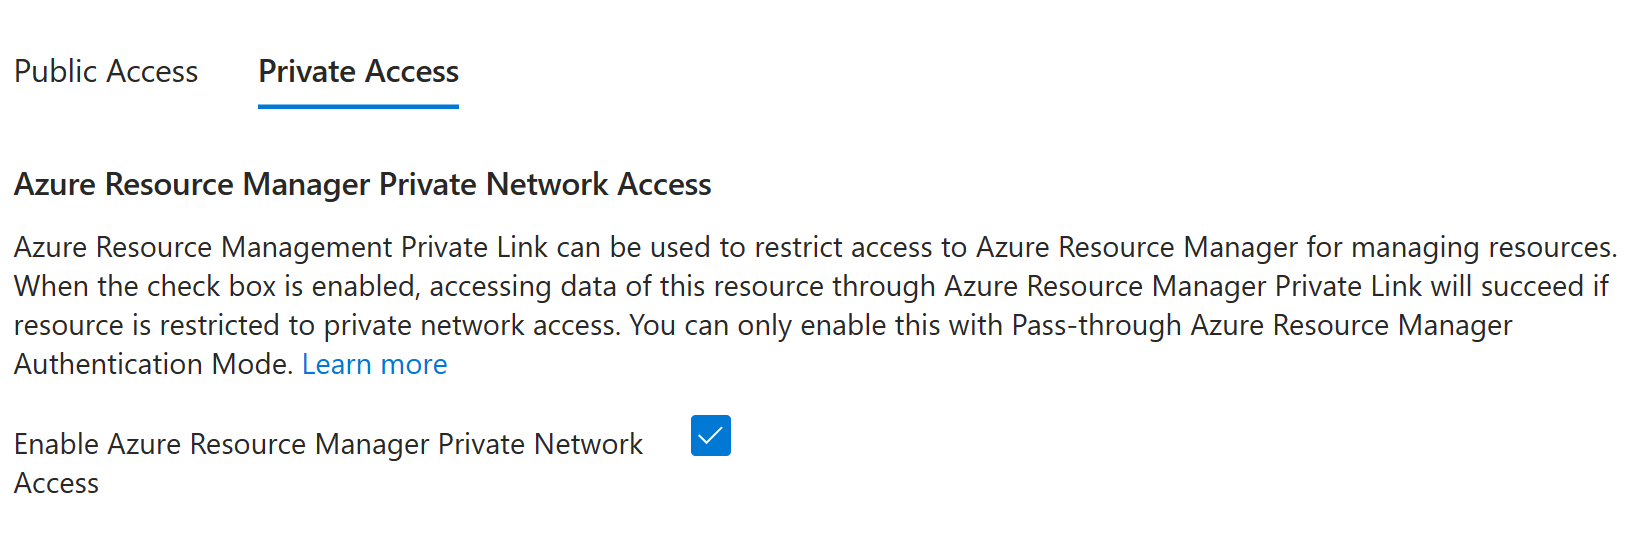 Az Azure Resource Manager Privát hozzáférés engedélyezése jelölőnégyzetet ábrázoló képernyőkép.